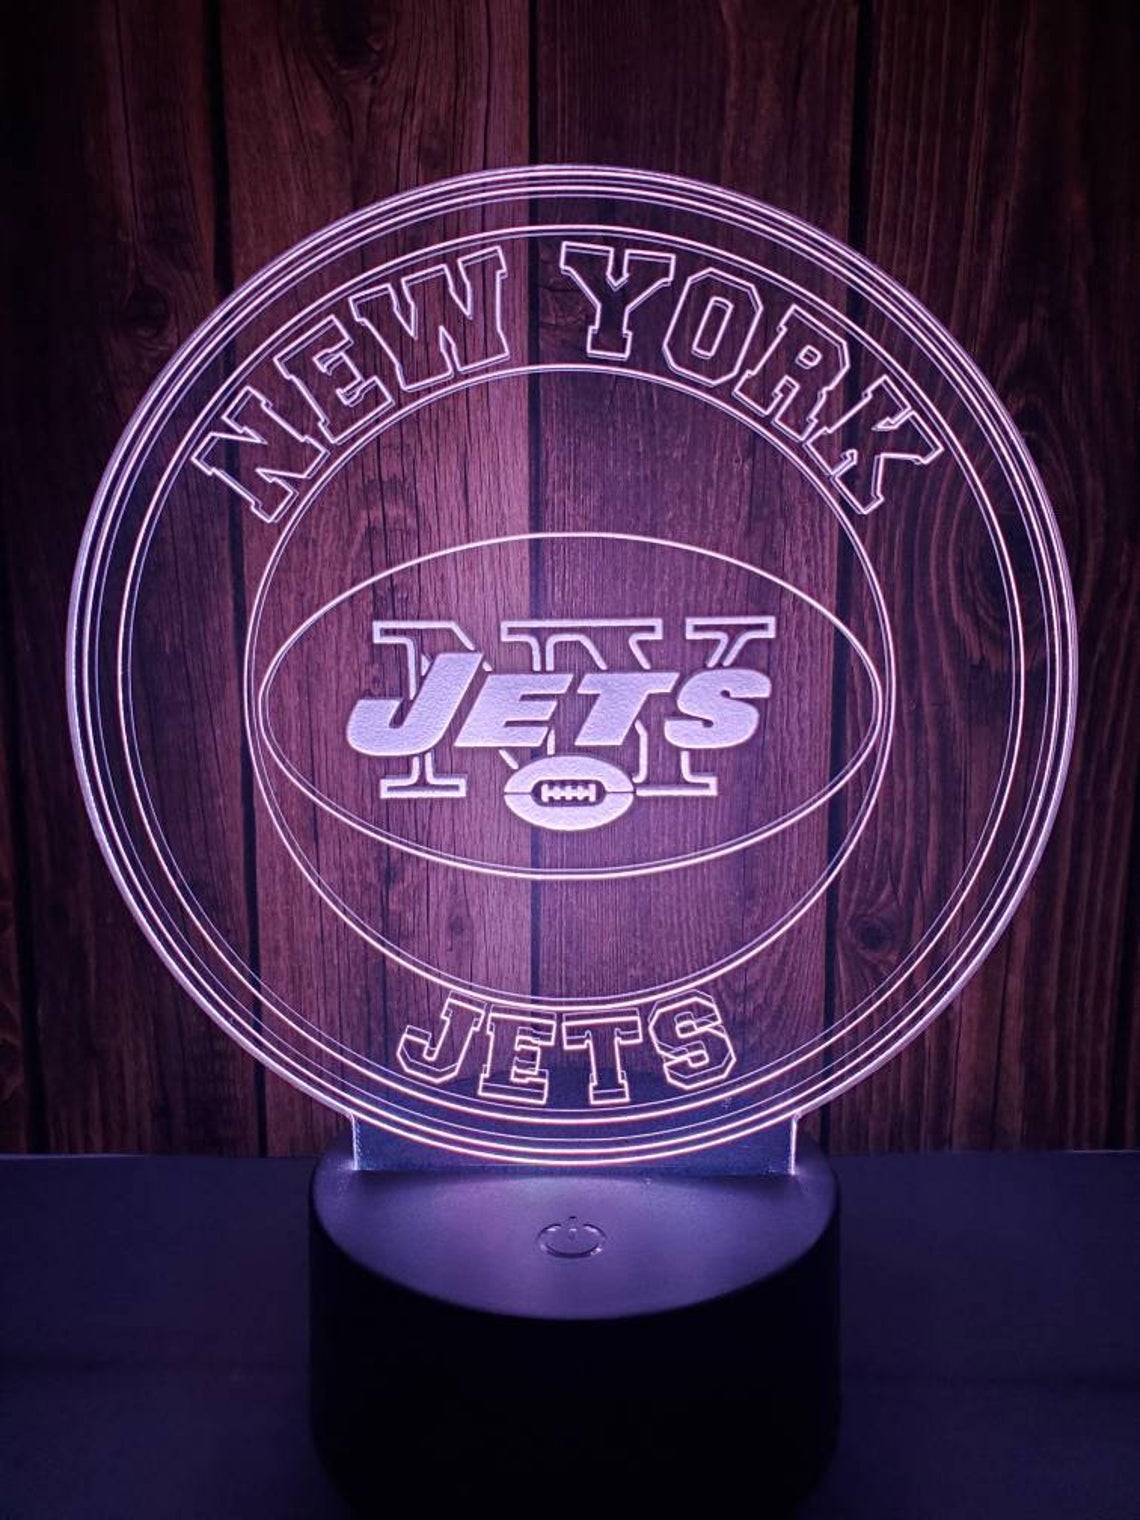 New York Jets 3D LED Lamp